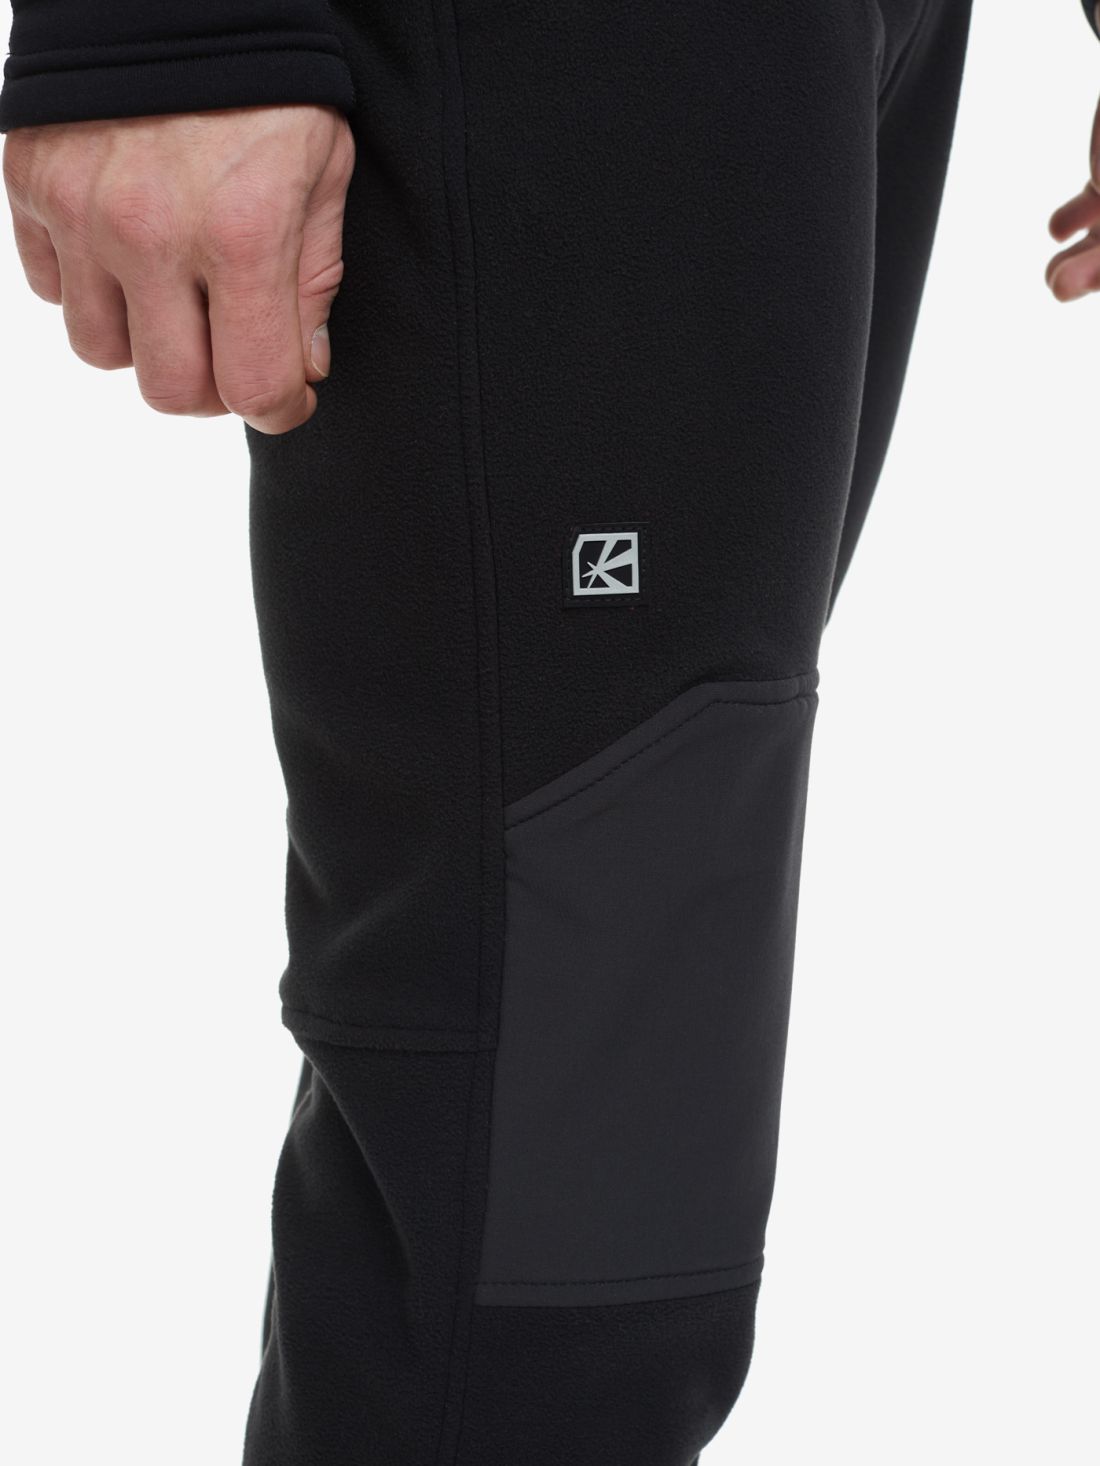 Мужские спортивные брюки Bask Outhermal V2